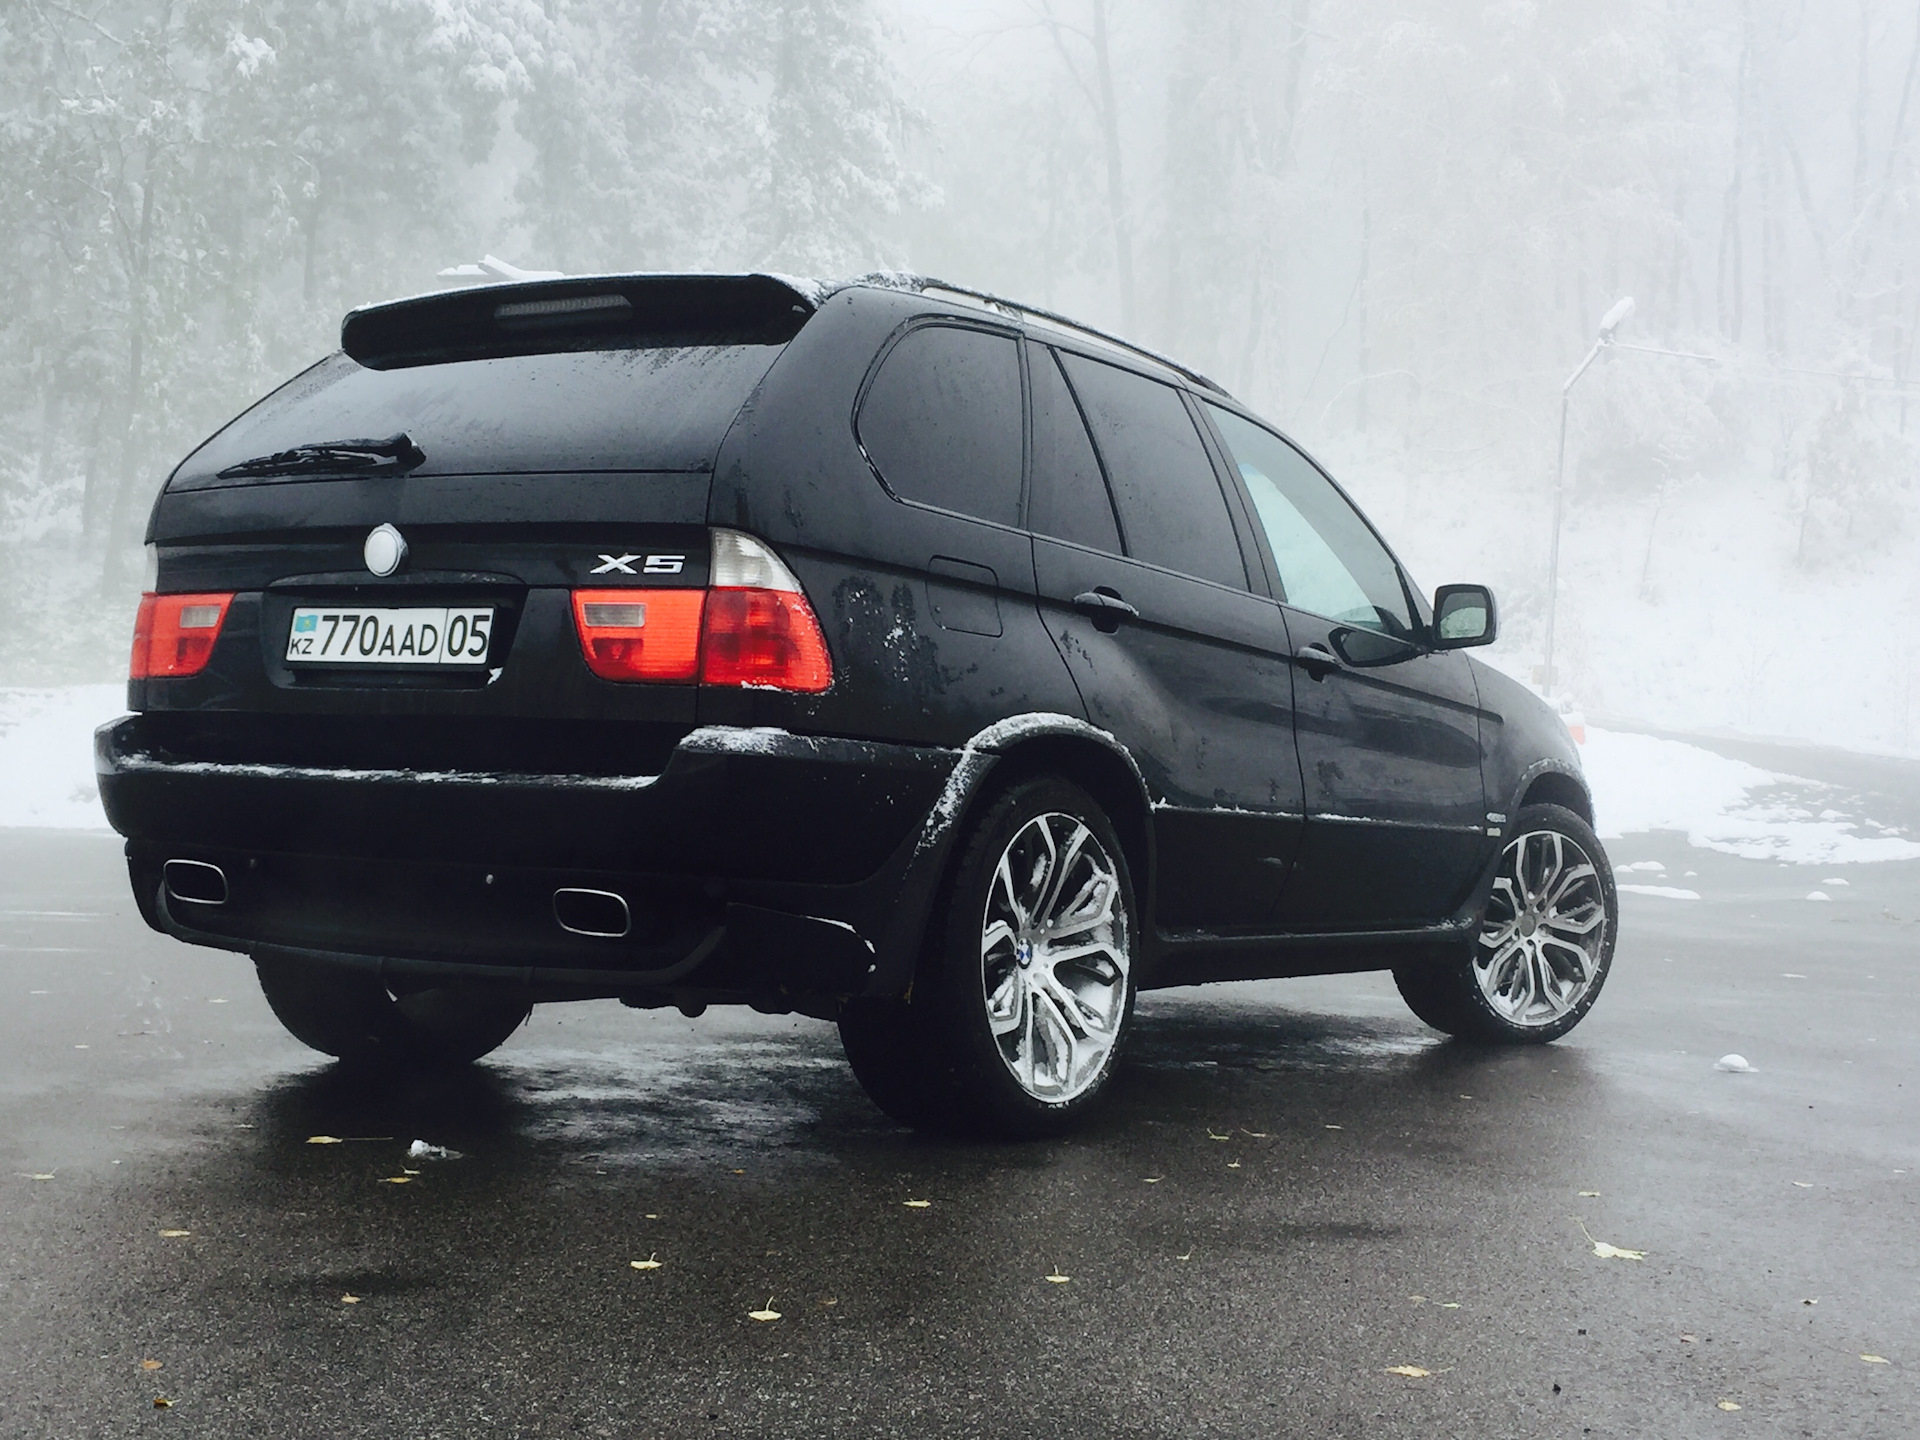 Бмв х5 е53 4.8. BMW x5 2005 4.8. BMW e53 4.8 чёрный. BMW x5 e53 черный.